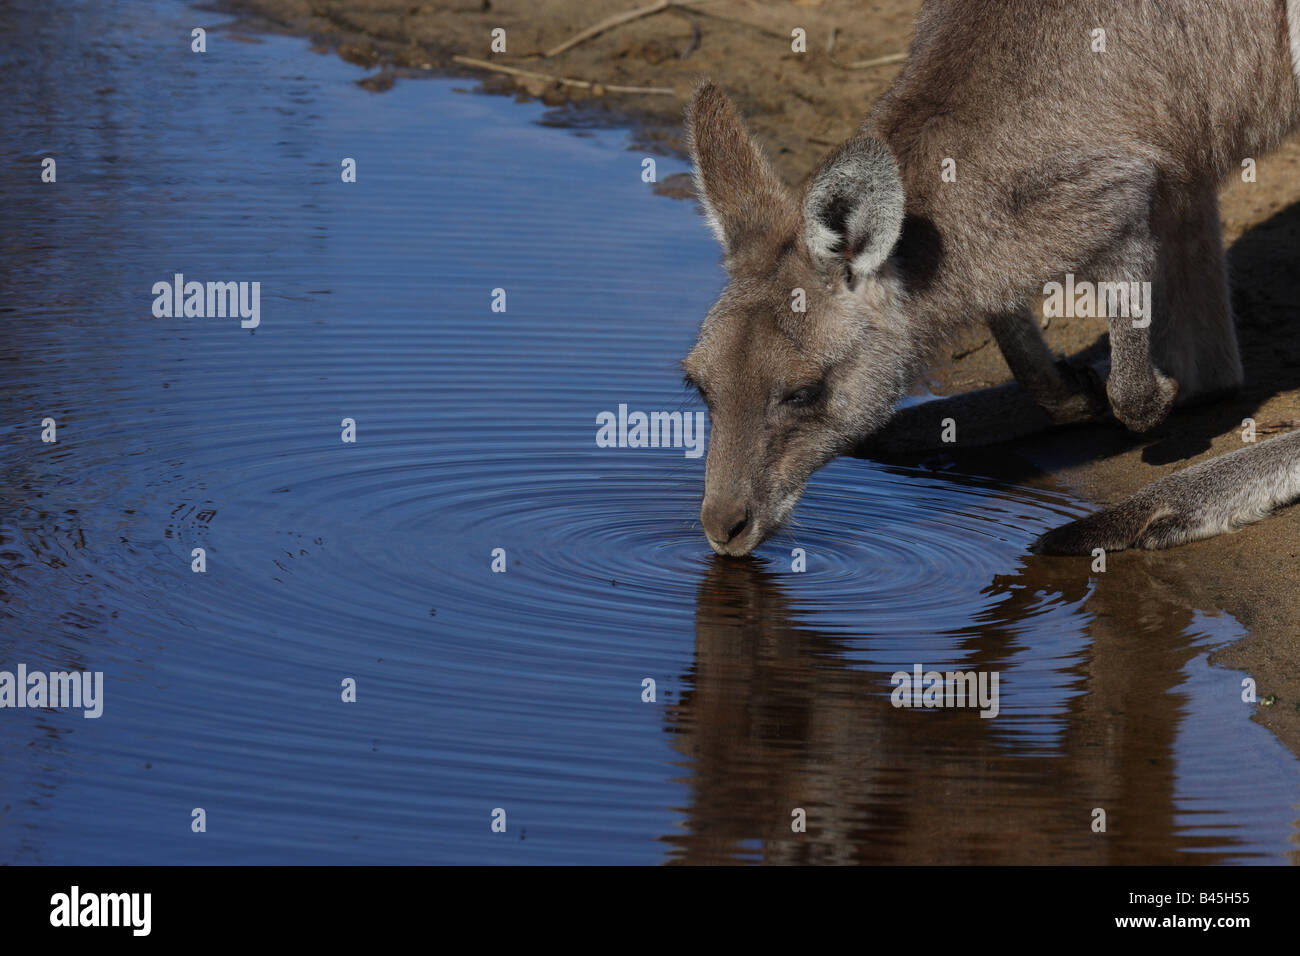 kangaroos drinking at waterhole Stock Photo